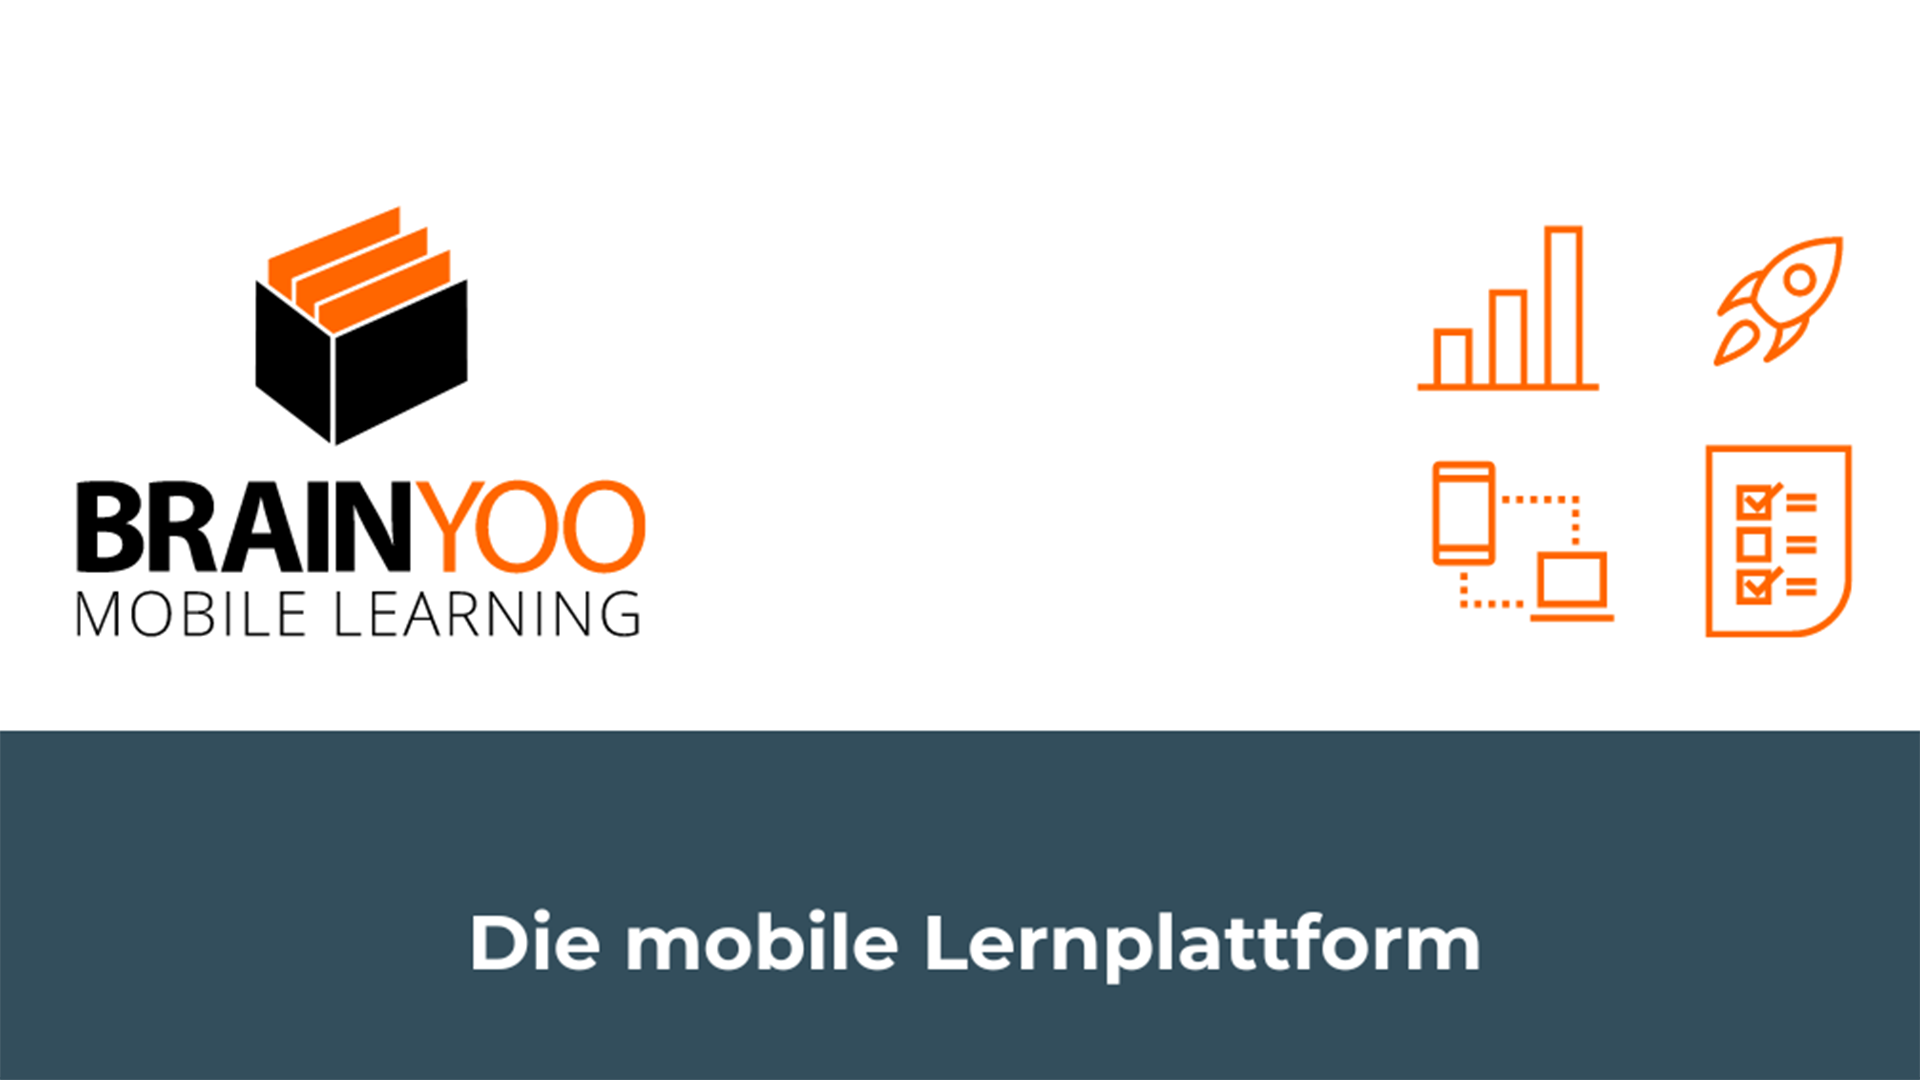 Das Logo von Brainyoo und der Schriftzug "Die mobile Lerrnplattform".